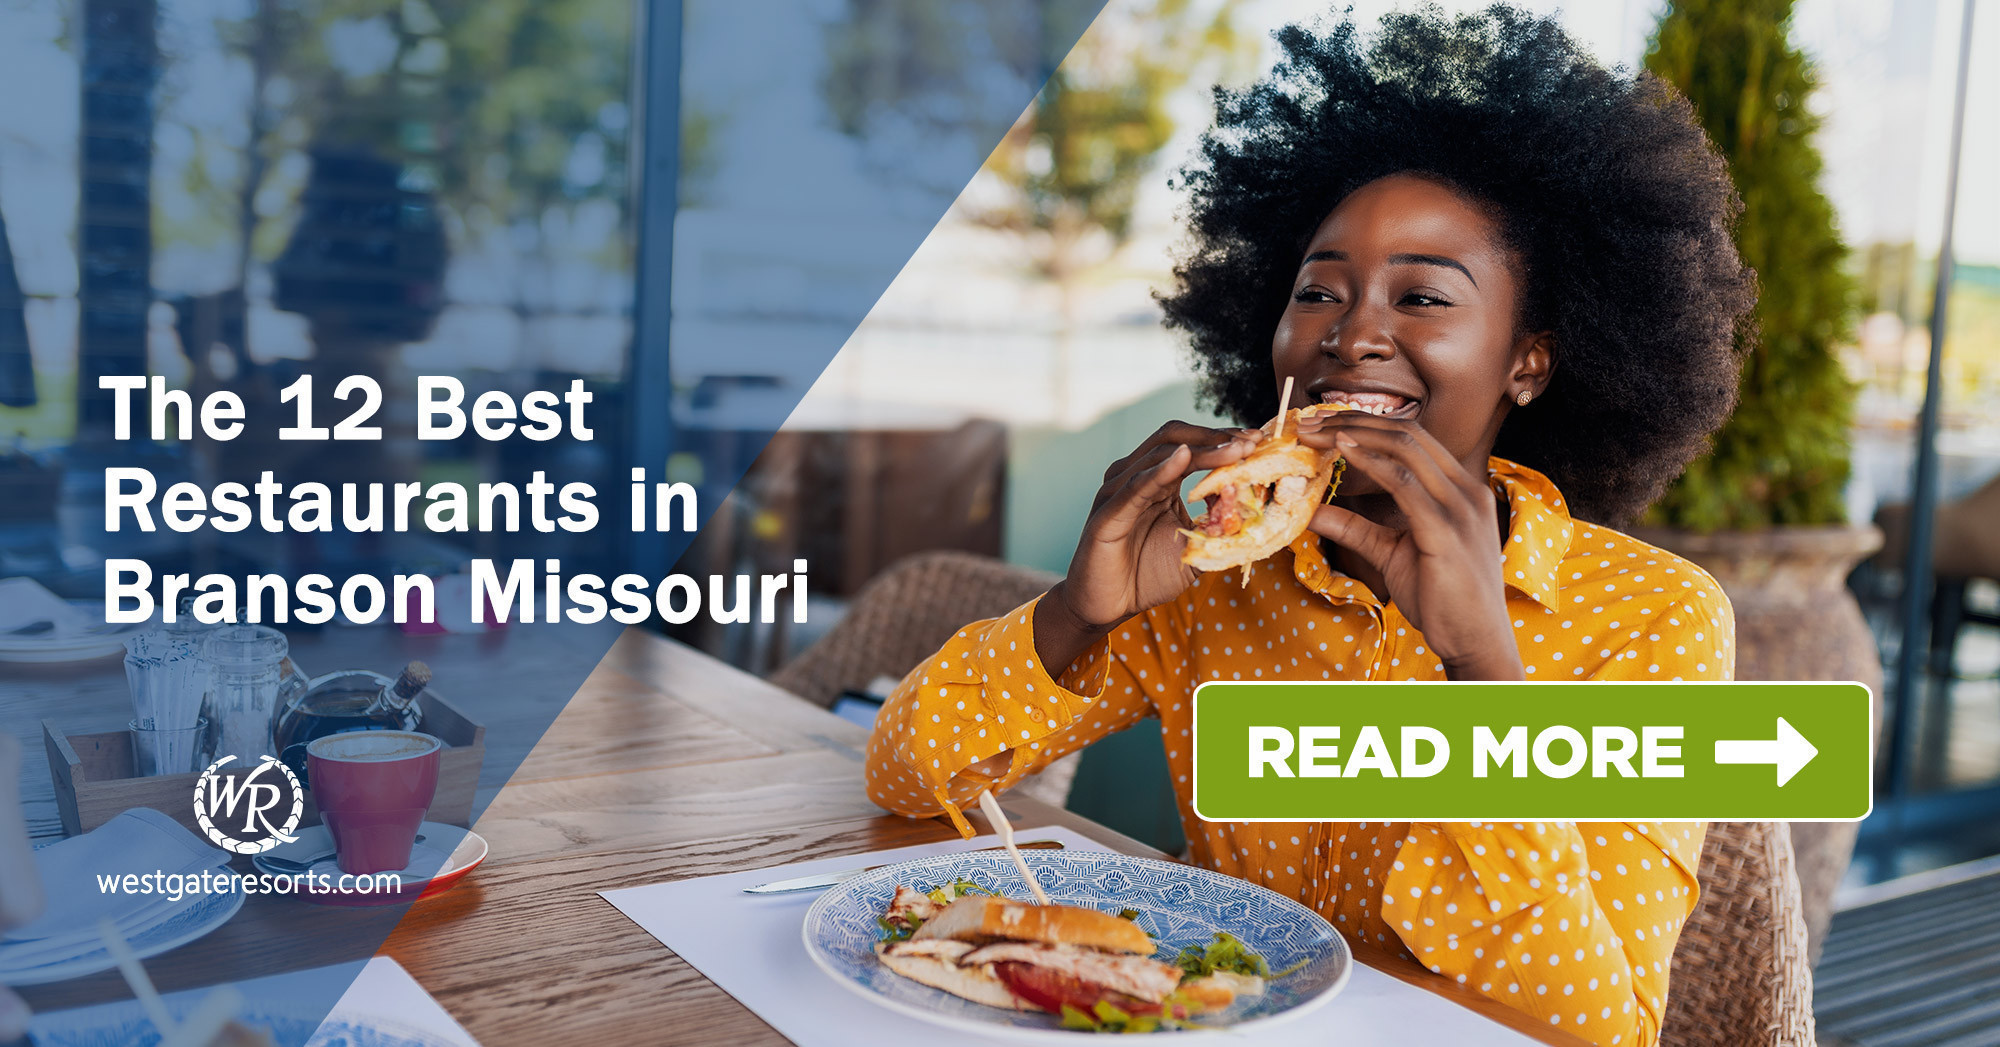 The 12 Best Restaurants in Branson Missouri